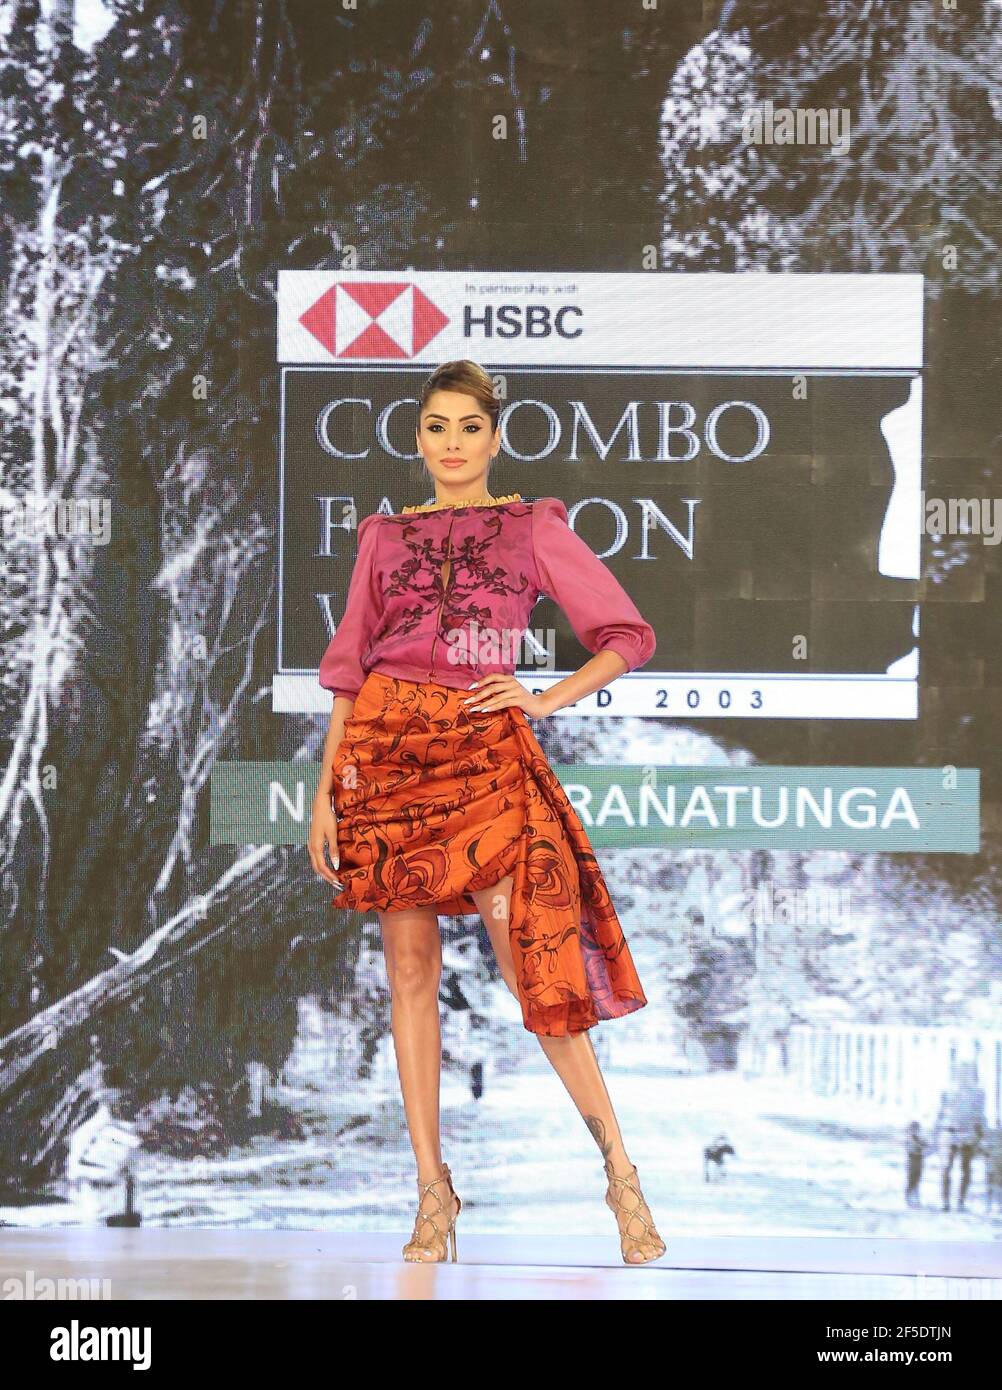 Colombo, Sri Lanka. 25 mars 2021. Un modèle présente une création lors de la semaine de la mode à Colombo, Sri Lanka, le 25 mars 2021. La Colombo Fashion week (édition été) a débuté à Colombo le 25 mars, en suivant des directives strictes en matière de santé, avec 21 nouveaux créateurs de mode et des designers locaux de premier plan participant à l'événement de trois jours. Fondée en 2003, la Colombo Fashion week en est à sa 18e année en 2021. Credit: Ajtih Perera/Xinhua/Alamy Live News Banque D'Images